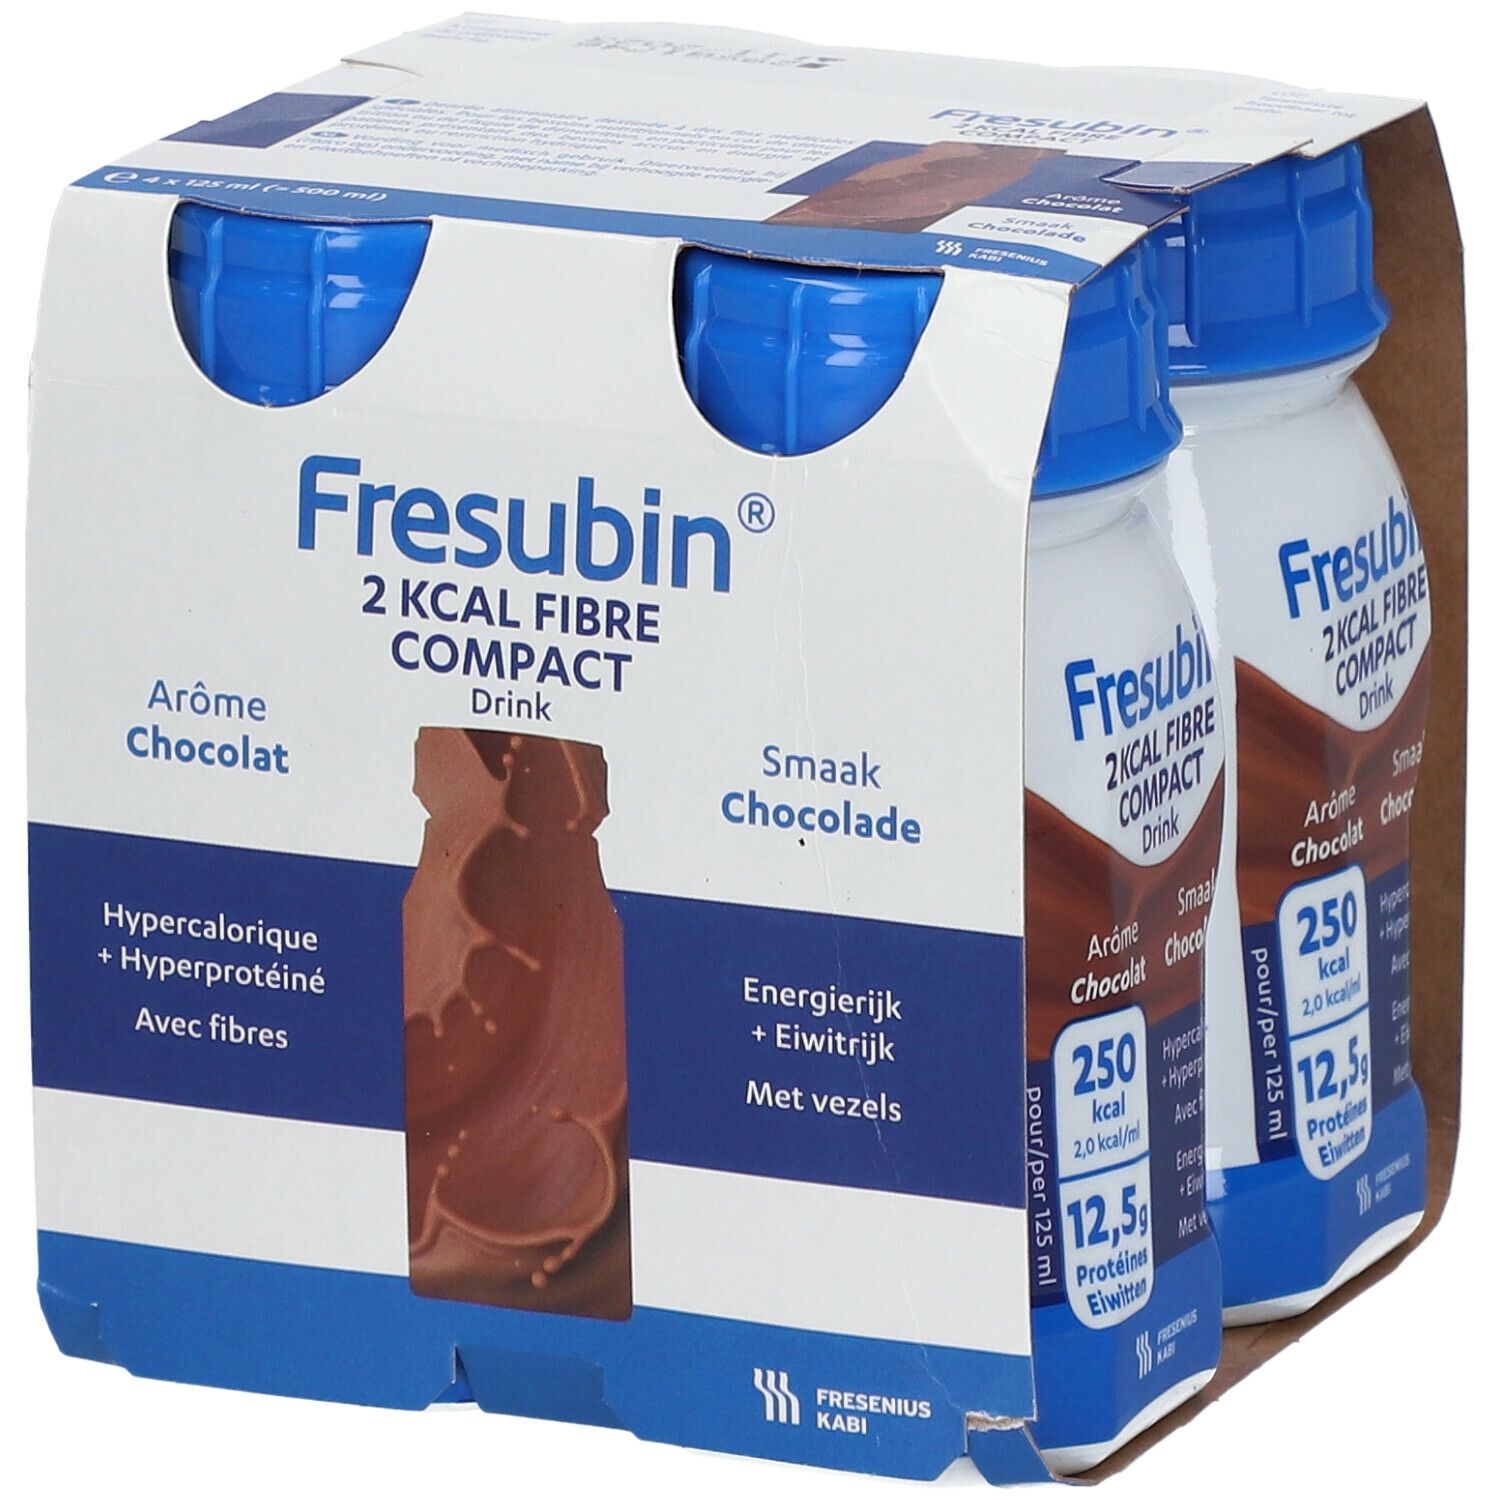 Fresubin® 2 kcal Fibre Compact Chocolat